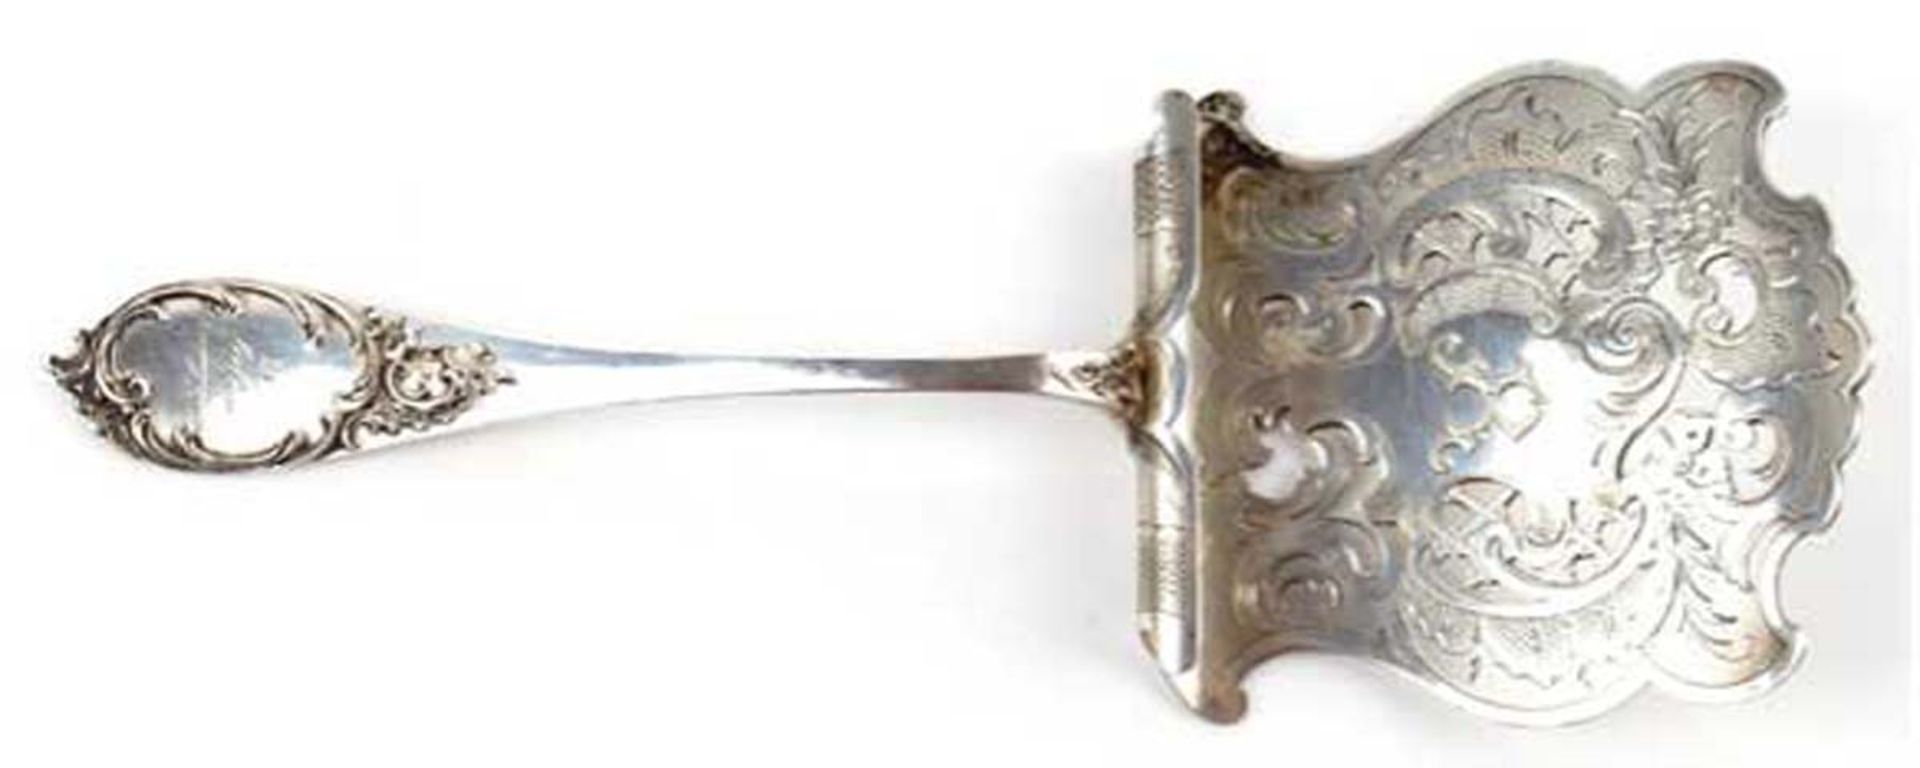 Spargelheber, 800er Silber, durchbrochene Schaufel mit Rocaillen- und Floraldekormonogrammiert "